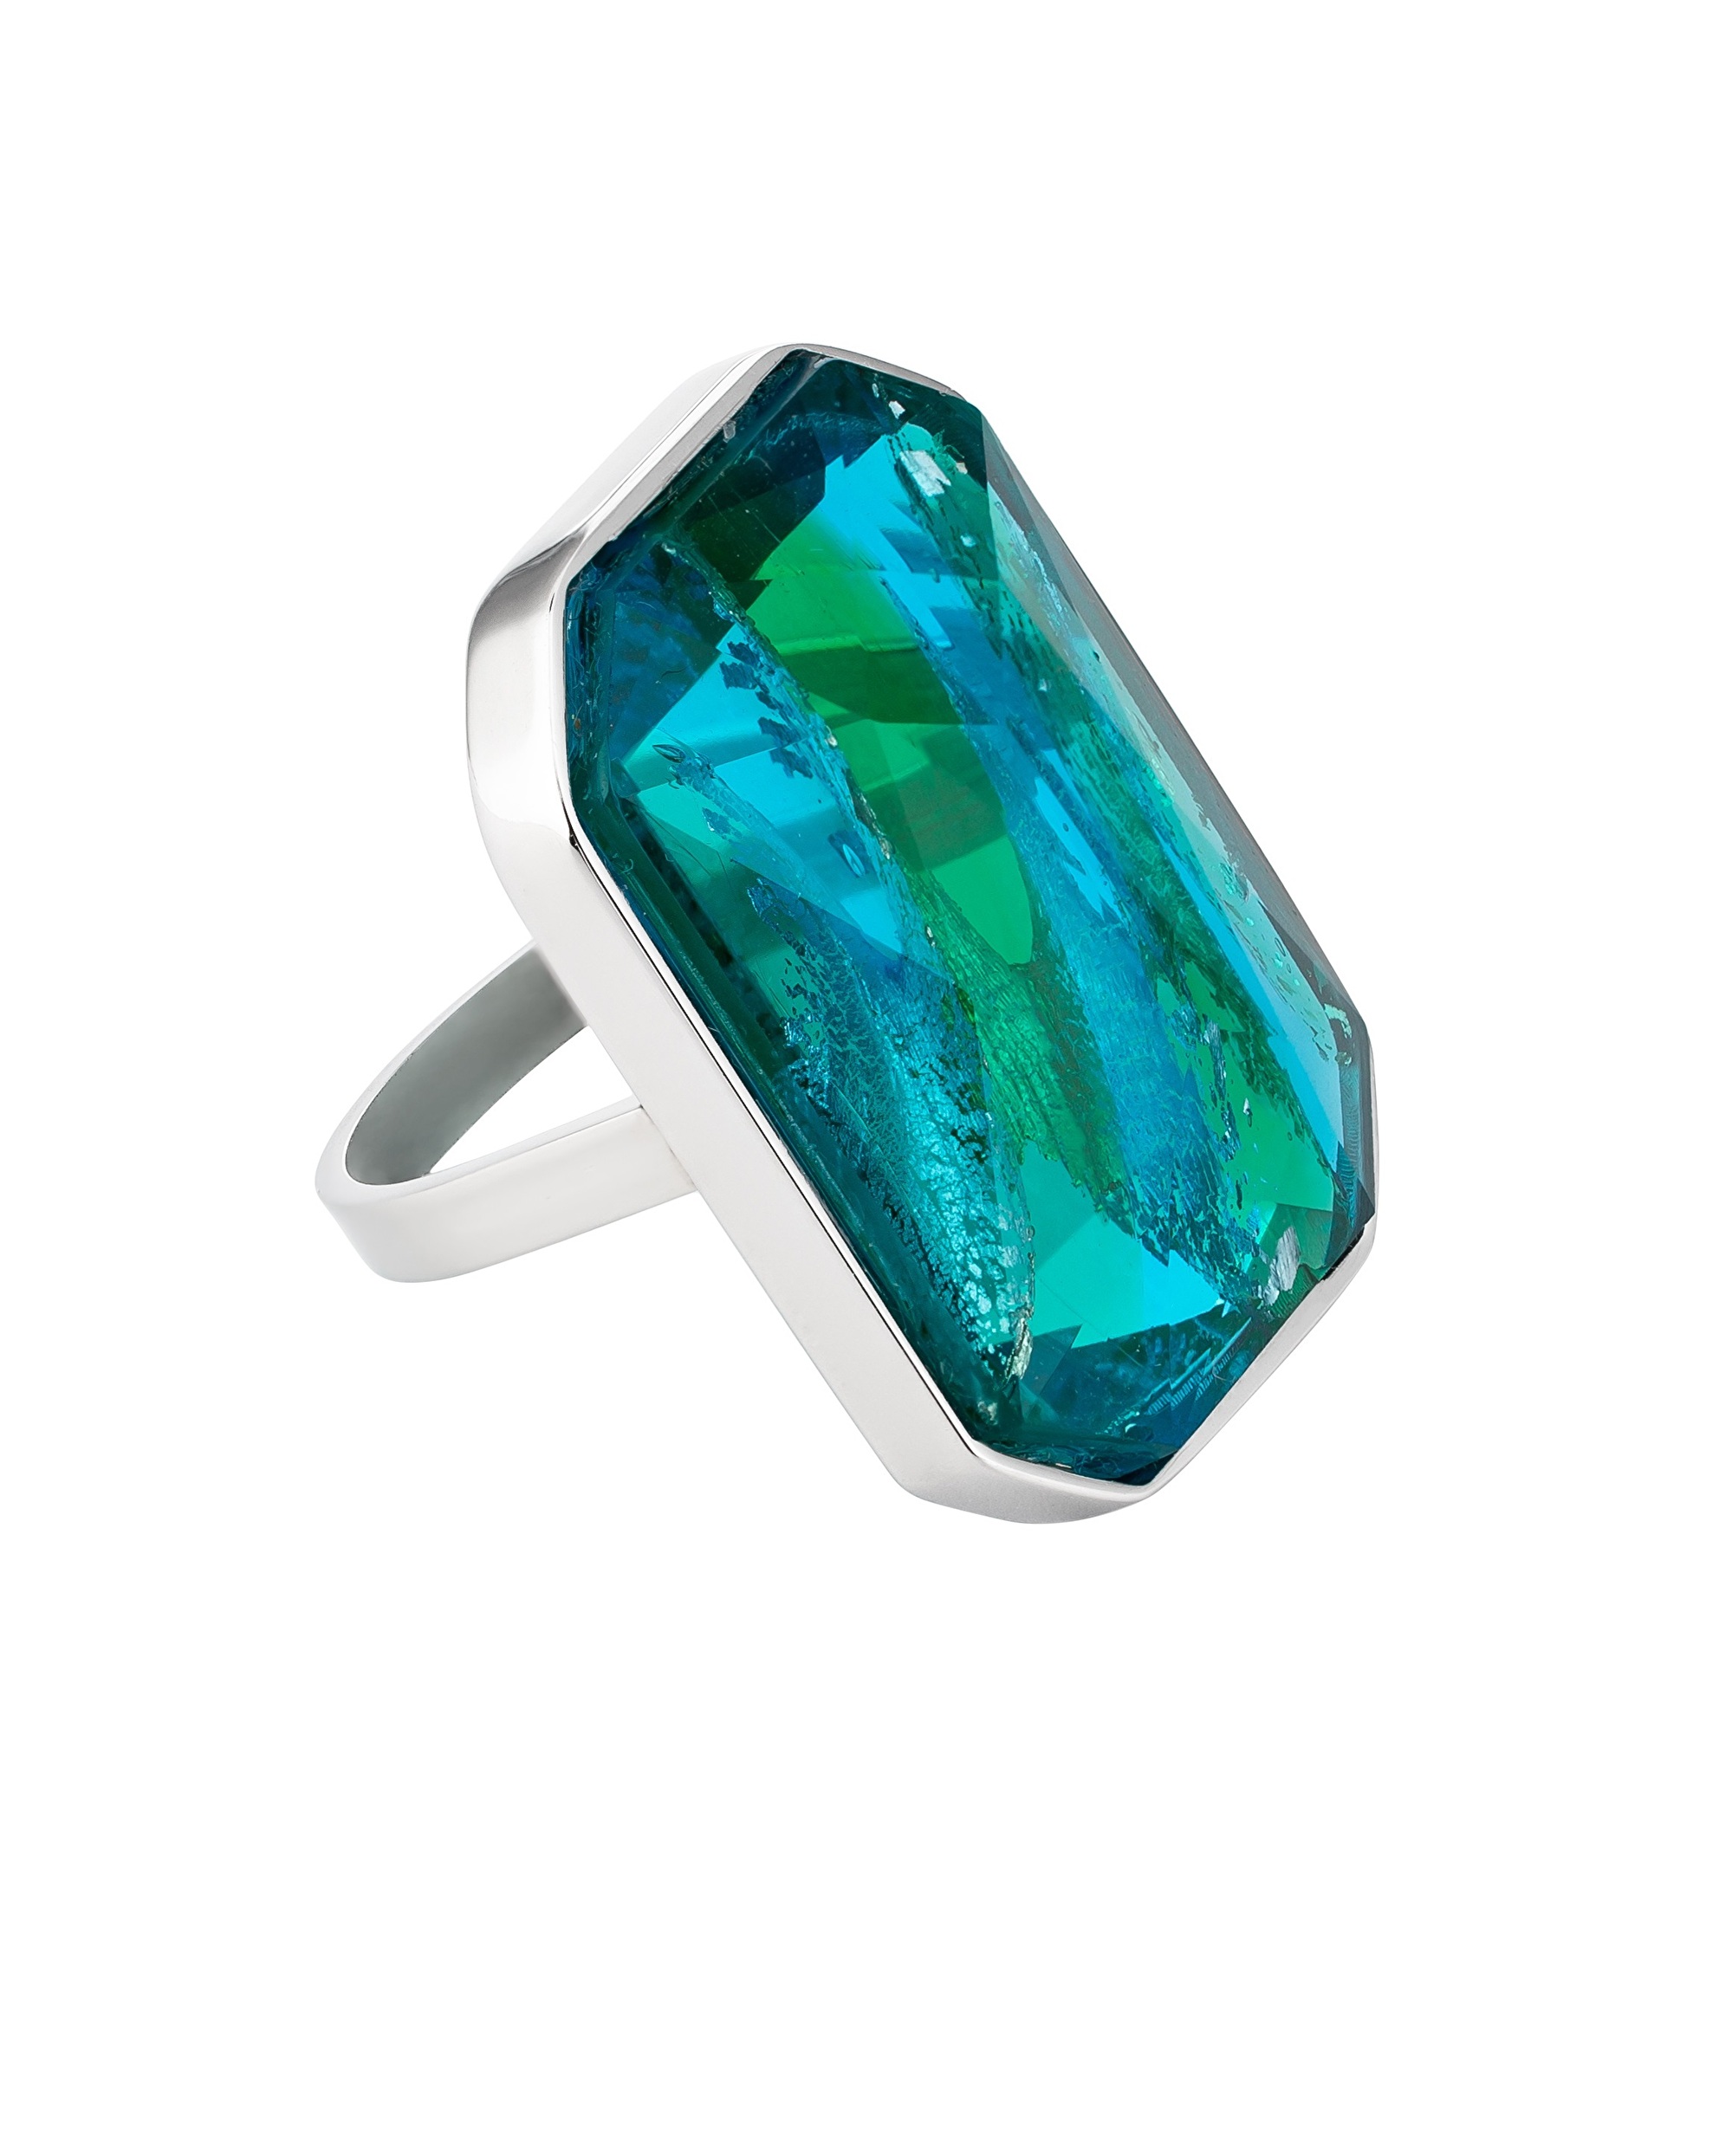 Preciosa Luxus acél gyűrű kézzel préselt cseh kristály kővel Preciosa Ocean Emerald 7446 66 60 mm